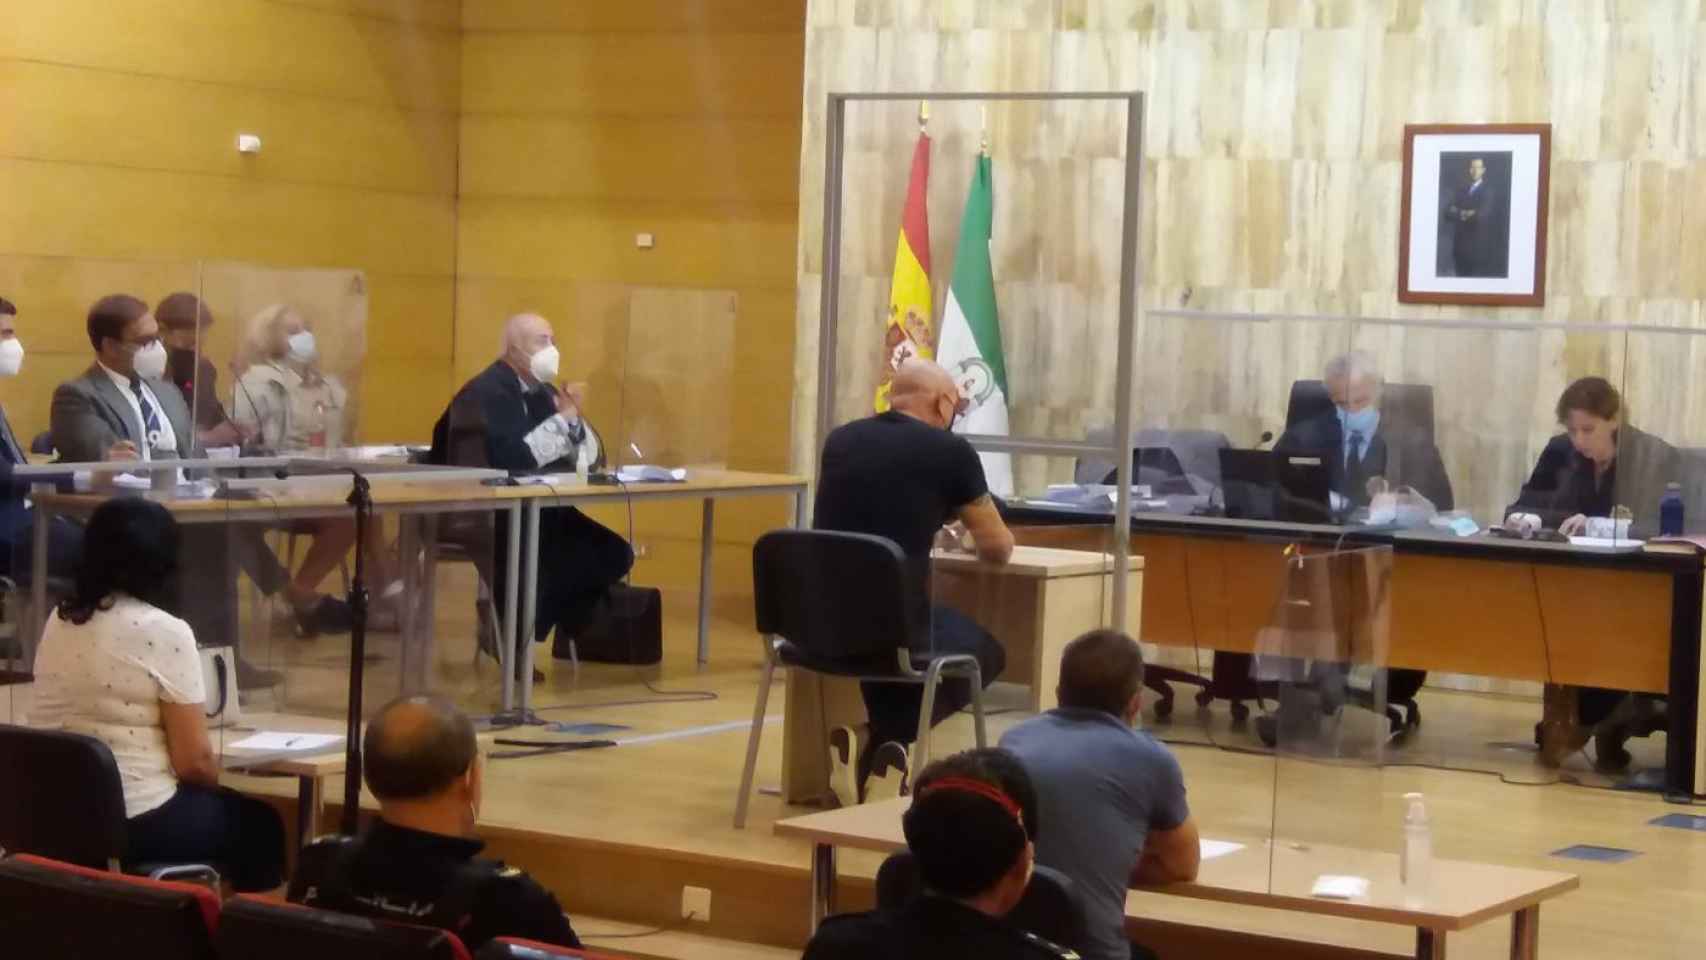 Una sesión del juicio contra el hombre condenado de degollar a su hijo en Balerma (Almería).